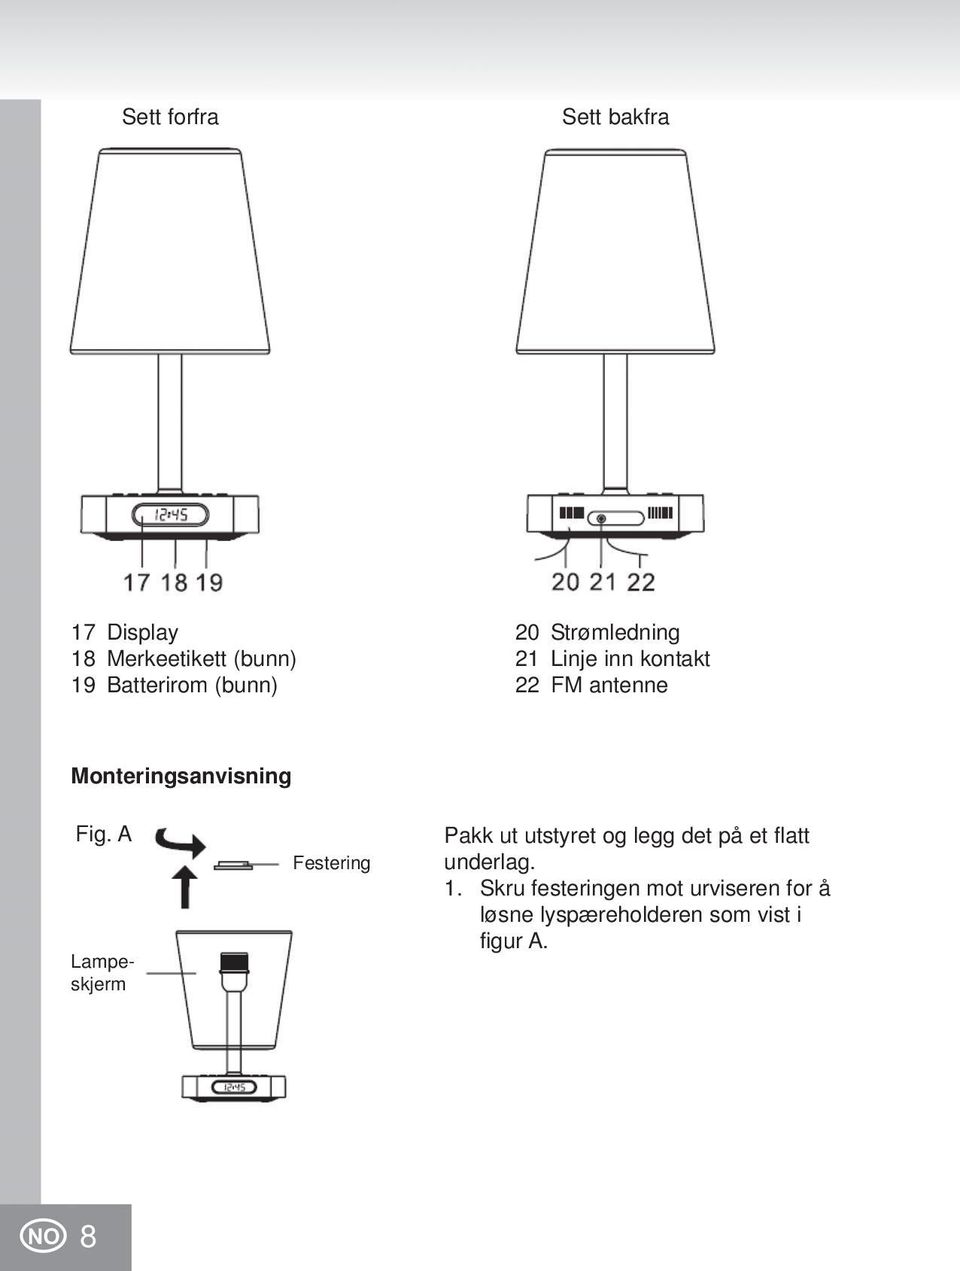 A Lampeskjerm Festering Pakk ut utstyret og legg det på et flatt underlag. 1.